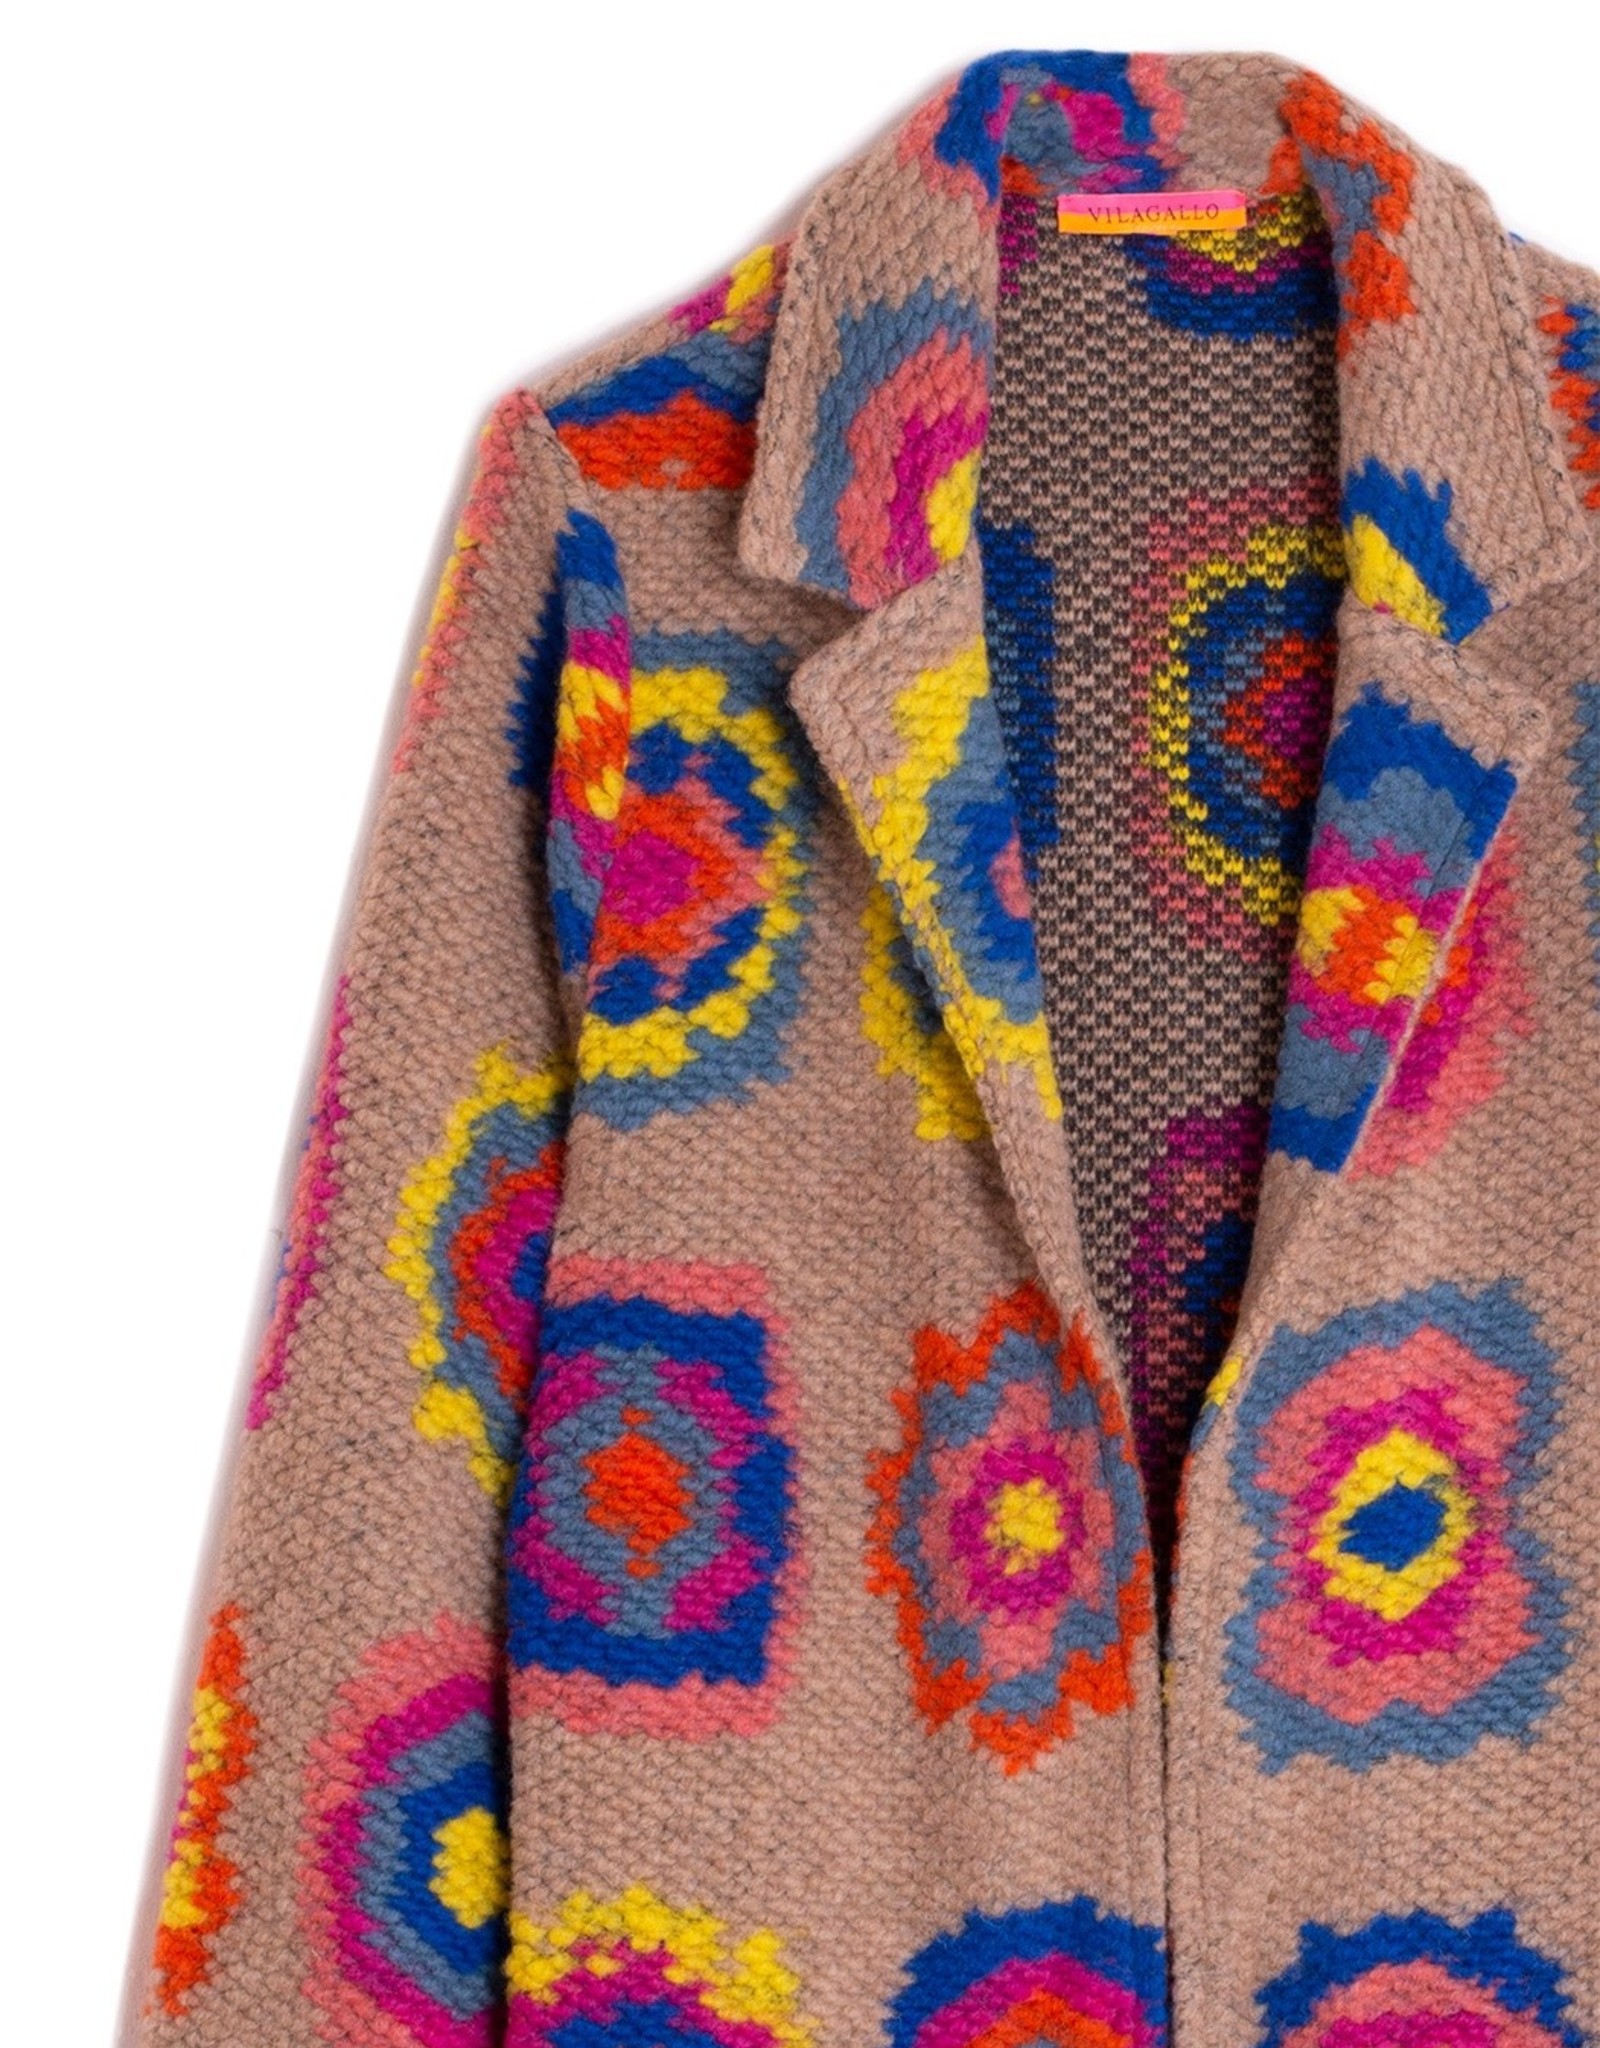 Vilagallo Piamonte Crochet Long Jacket